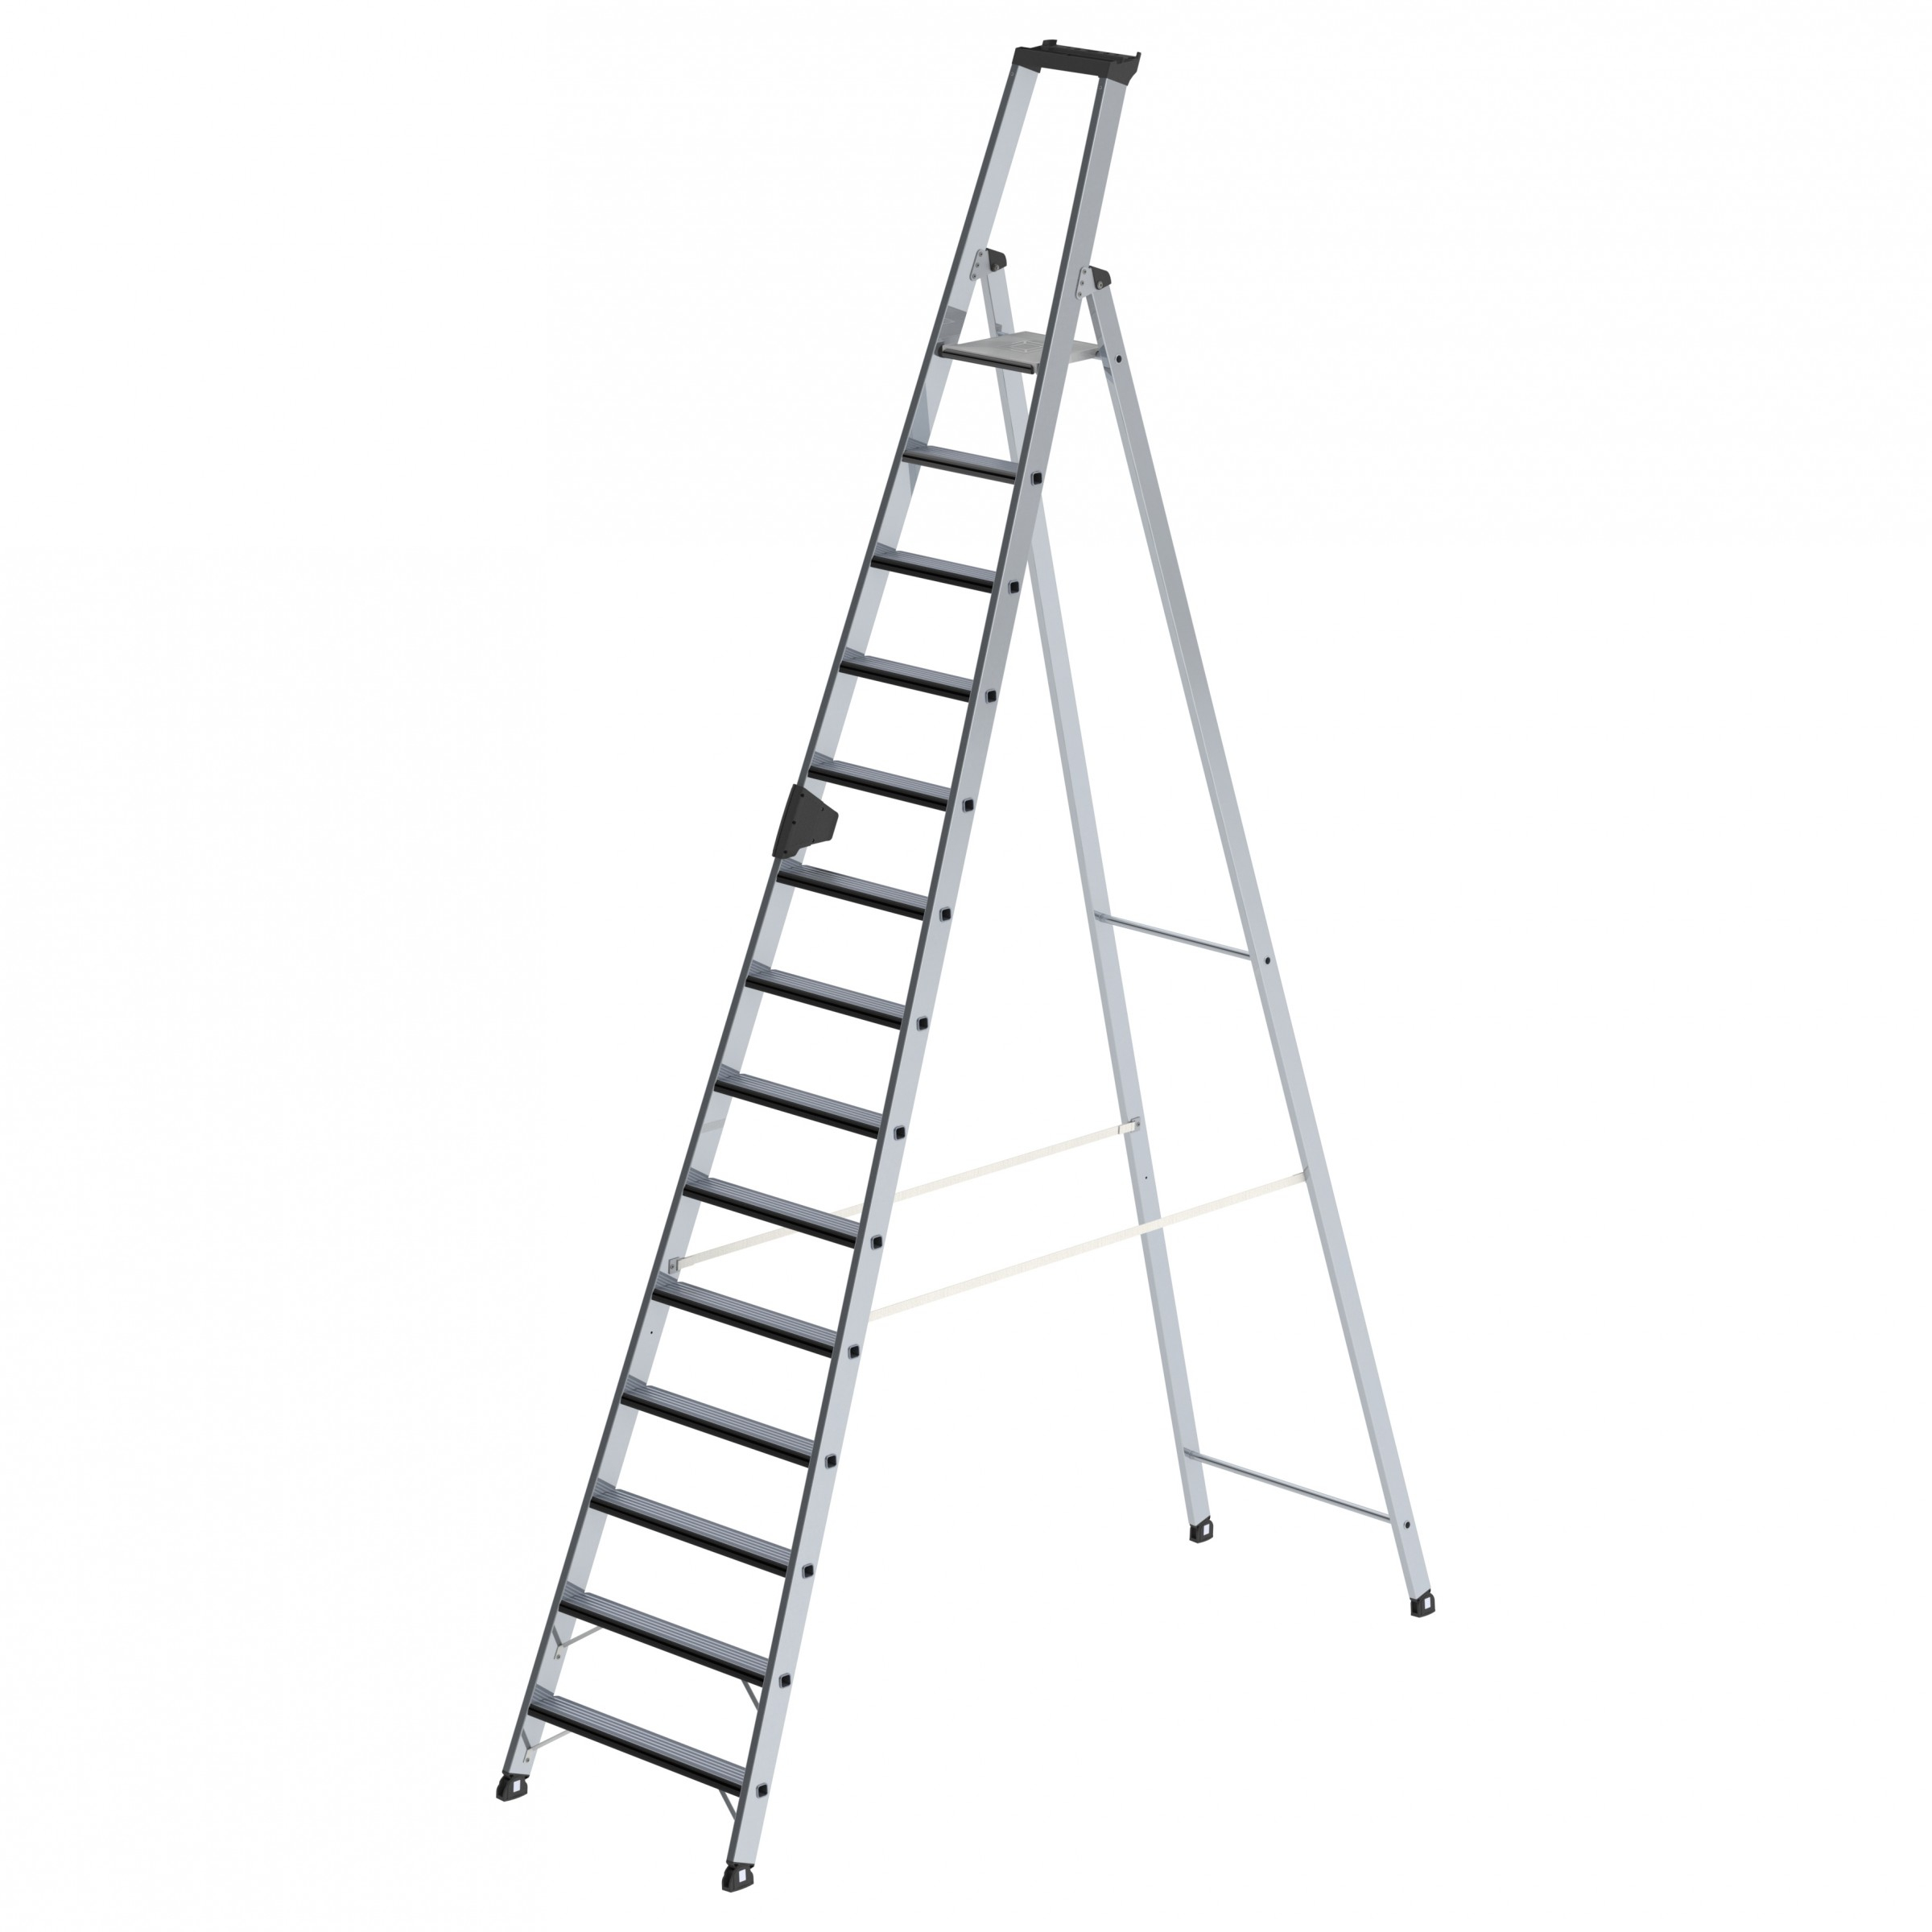 Stufen-Stehleiter einseitig begehbar mit relax step®, 6 Stufen